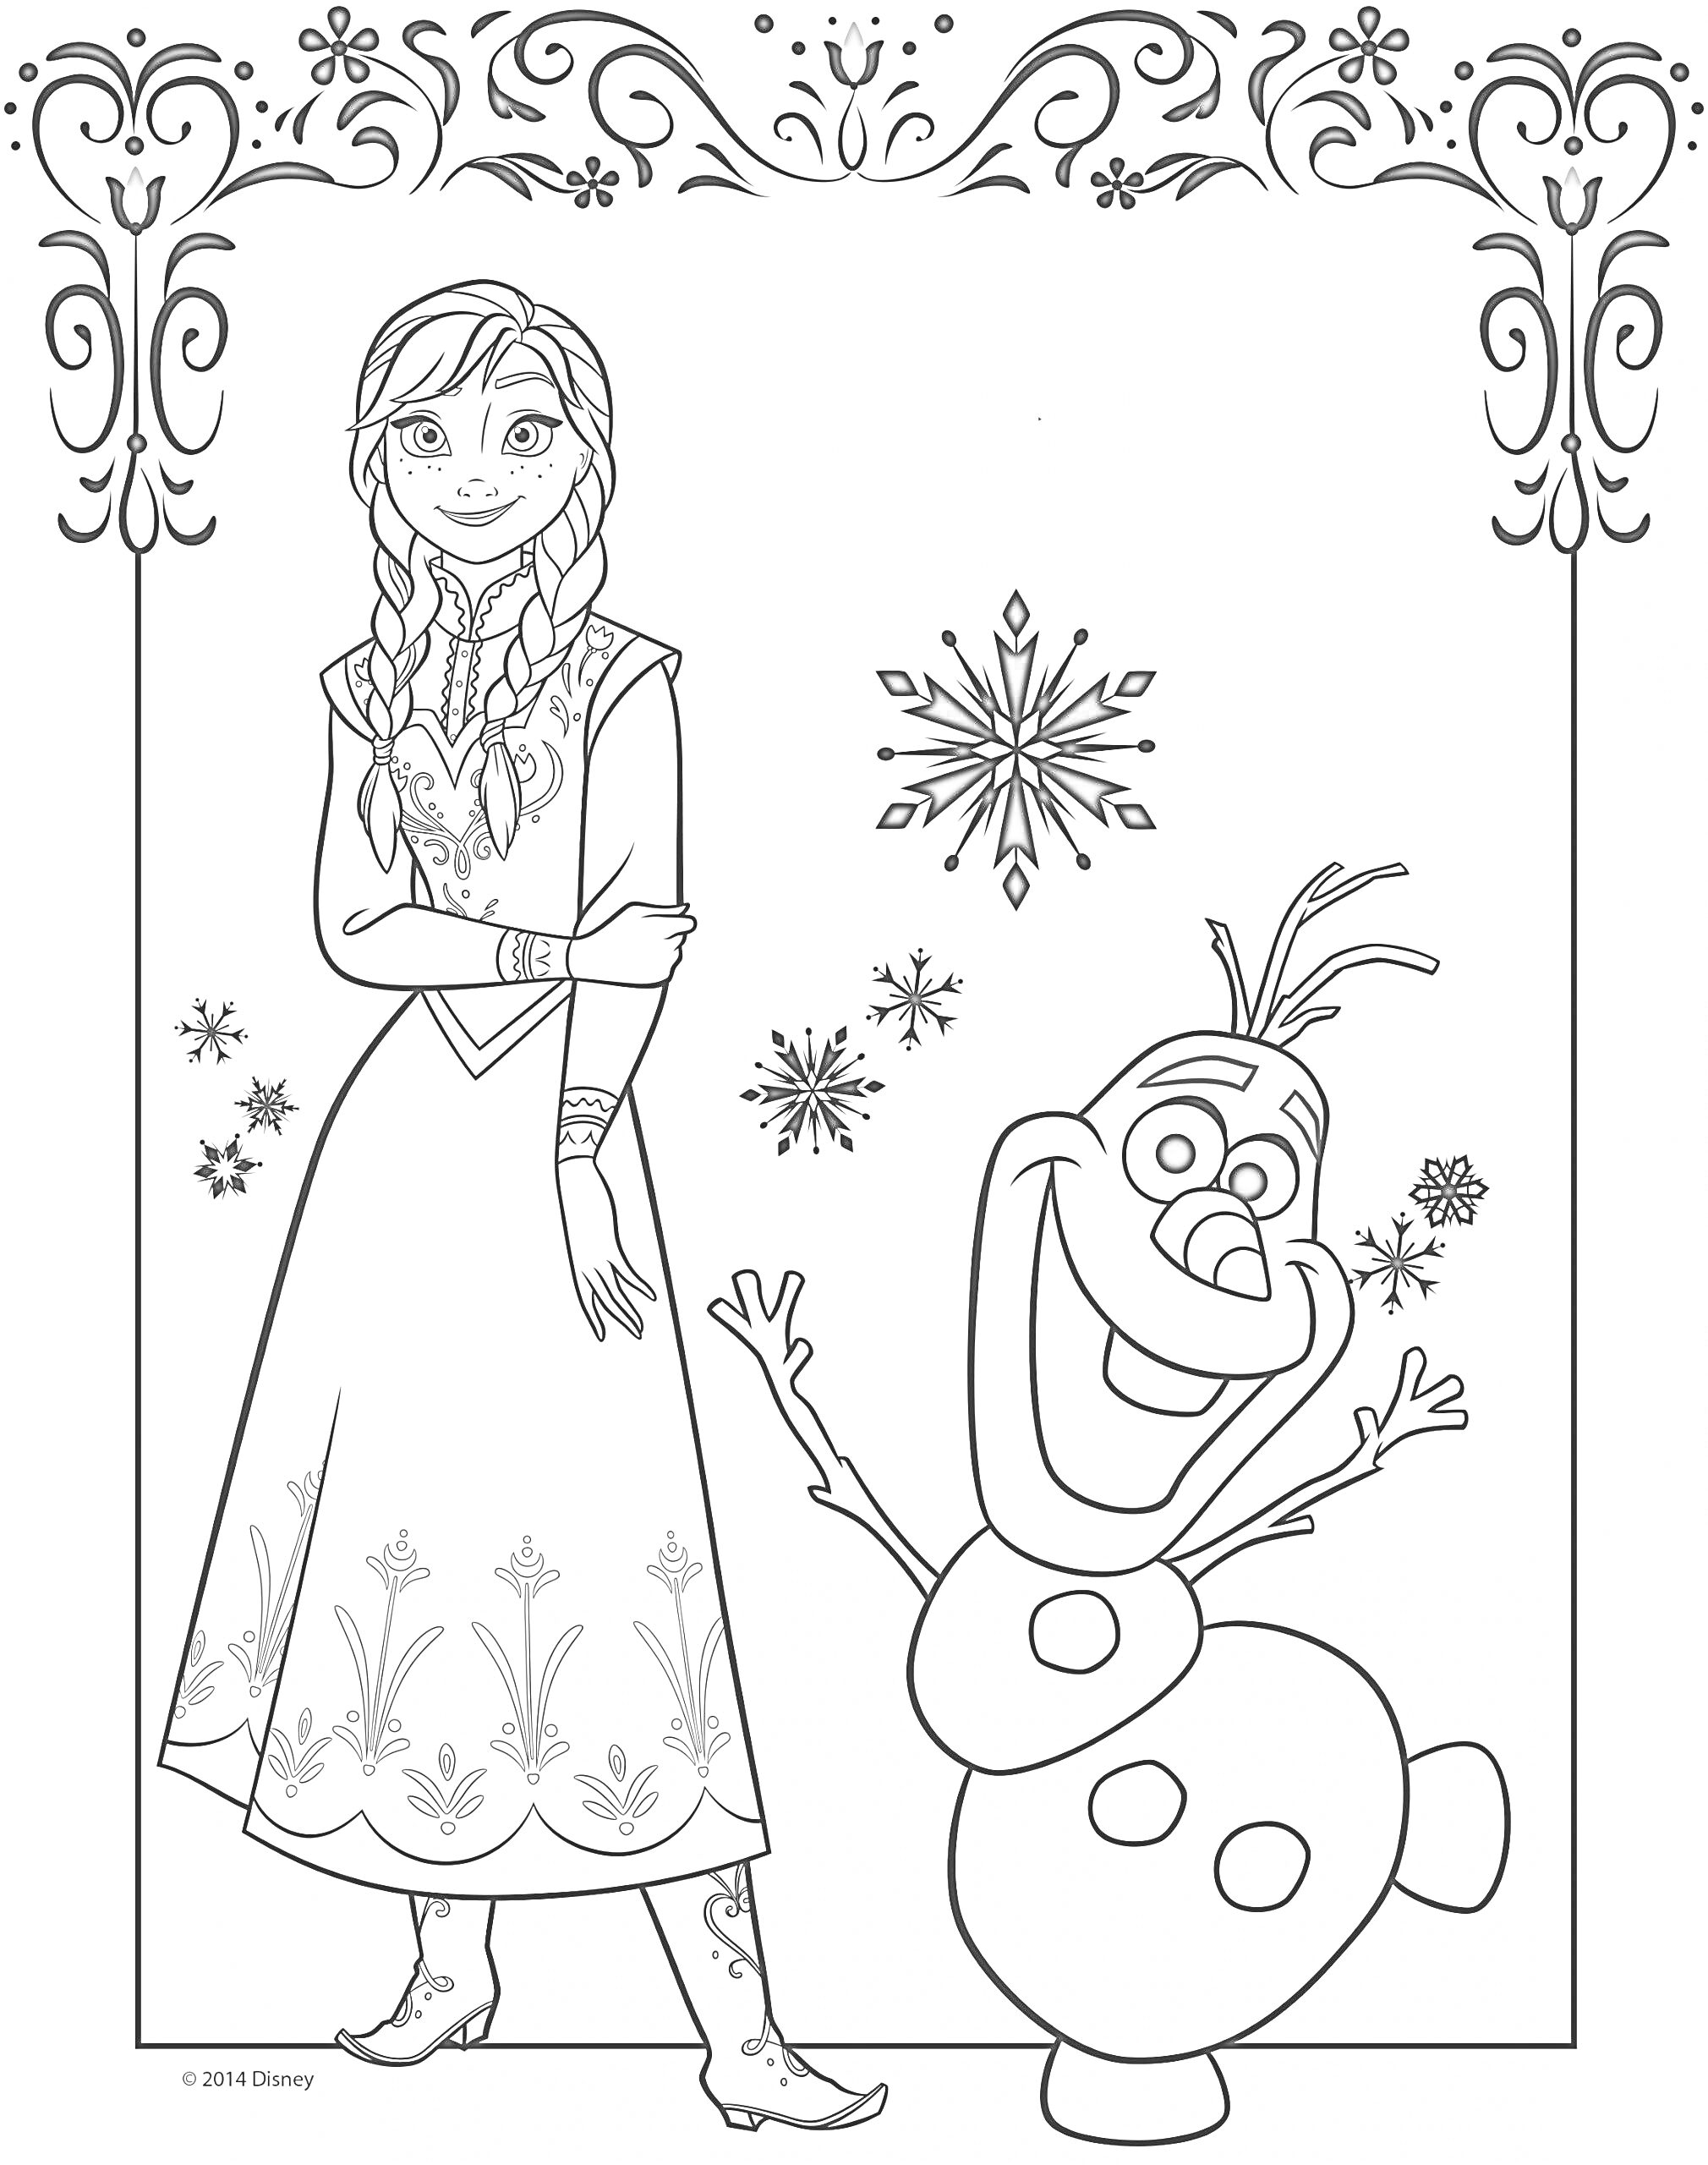 Раскраска Принцесса с косами и снеговик с узором снежинок